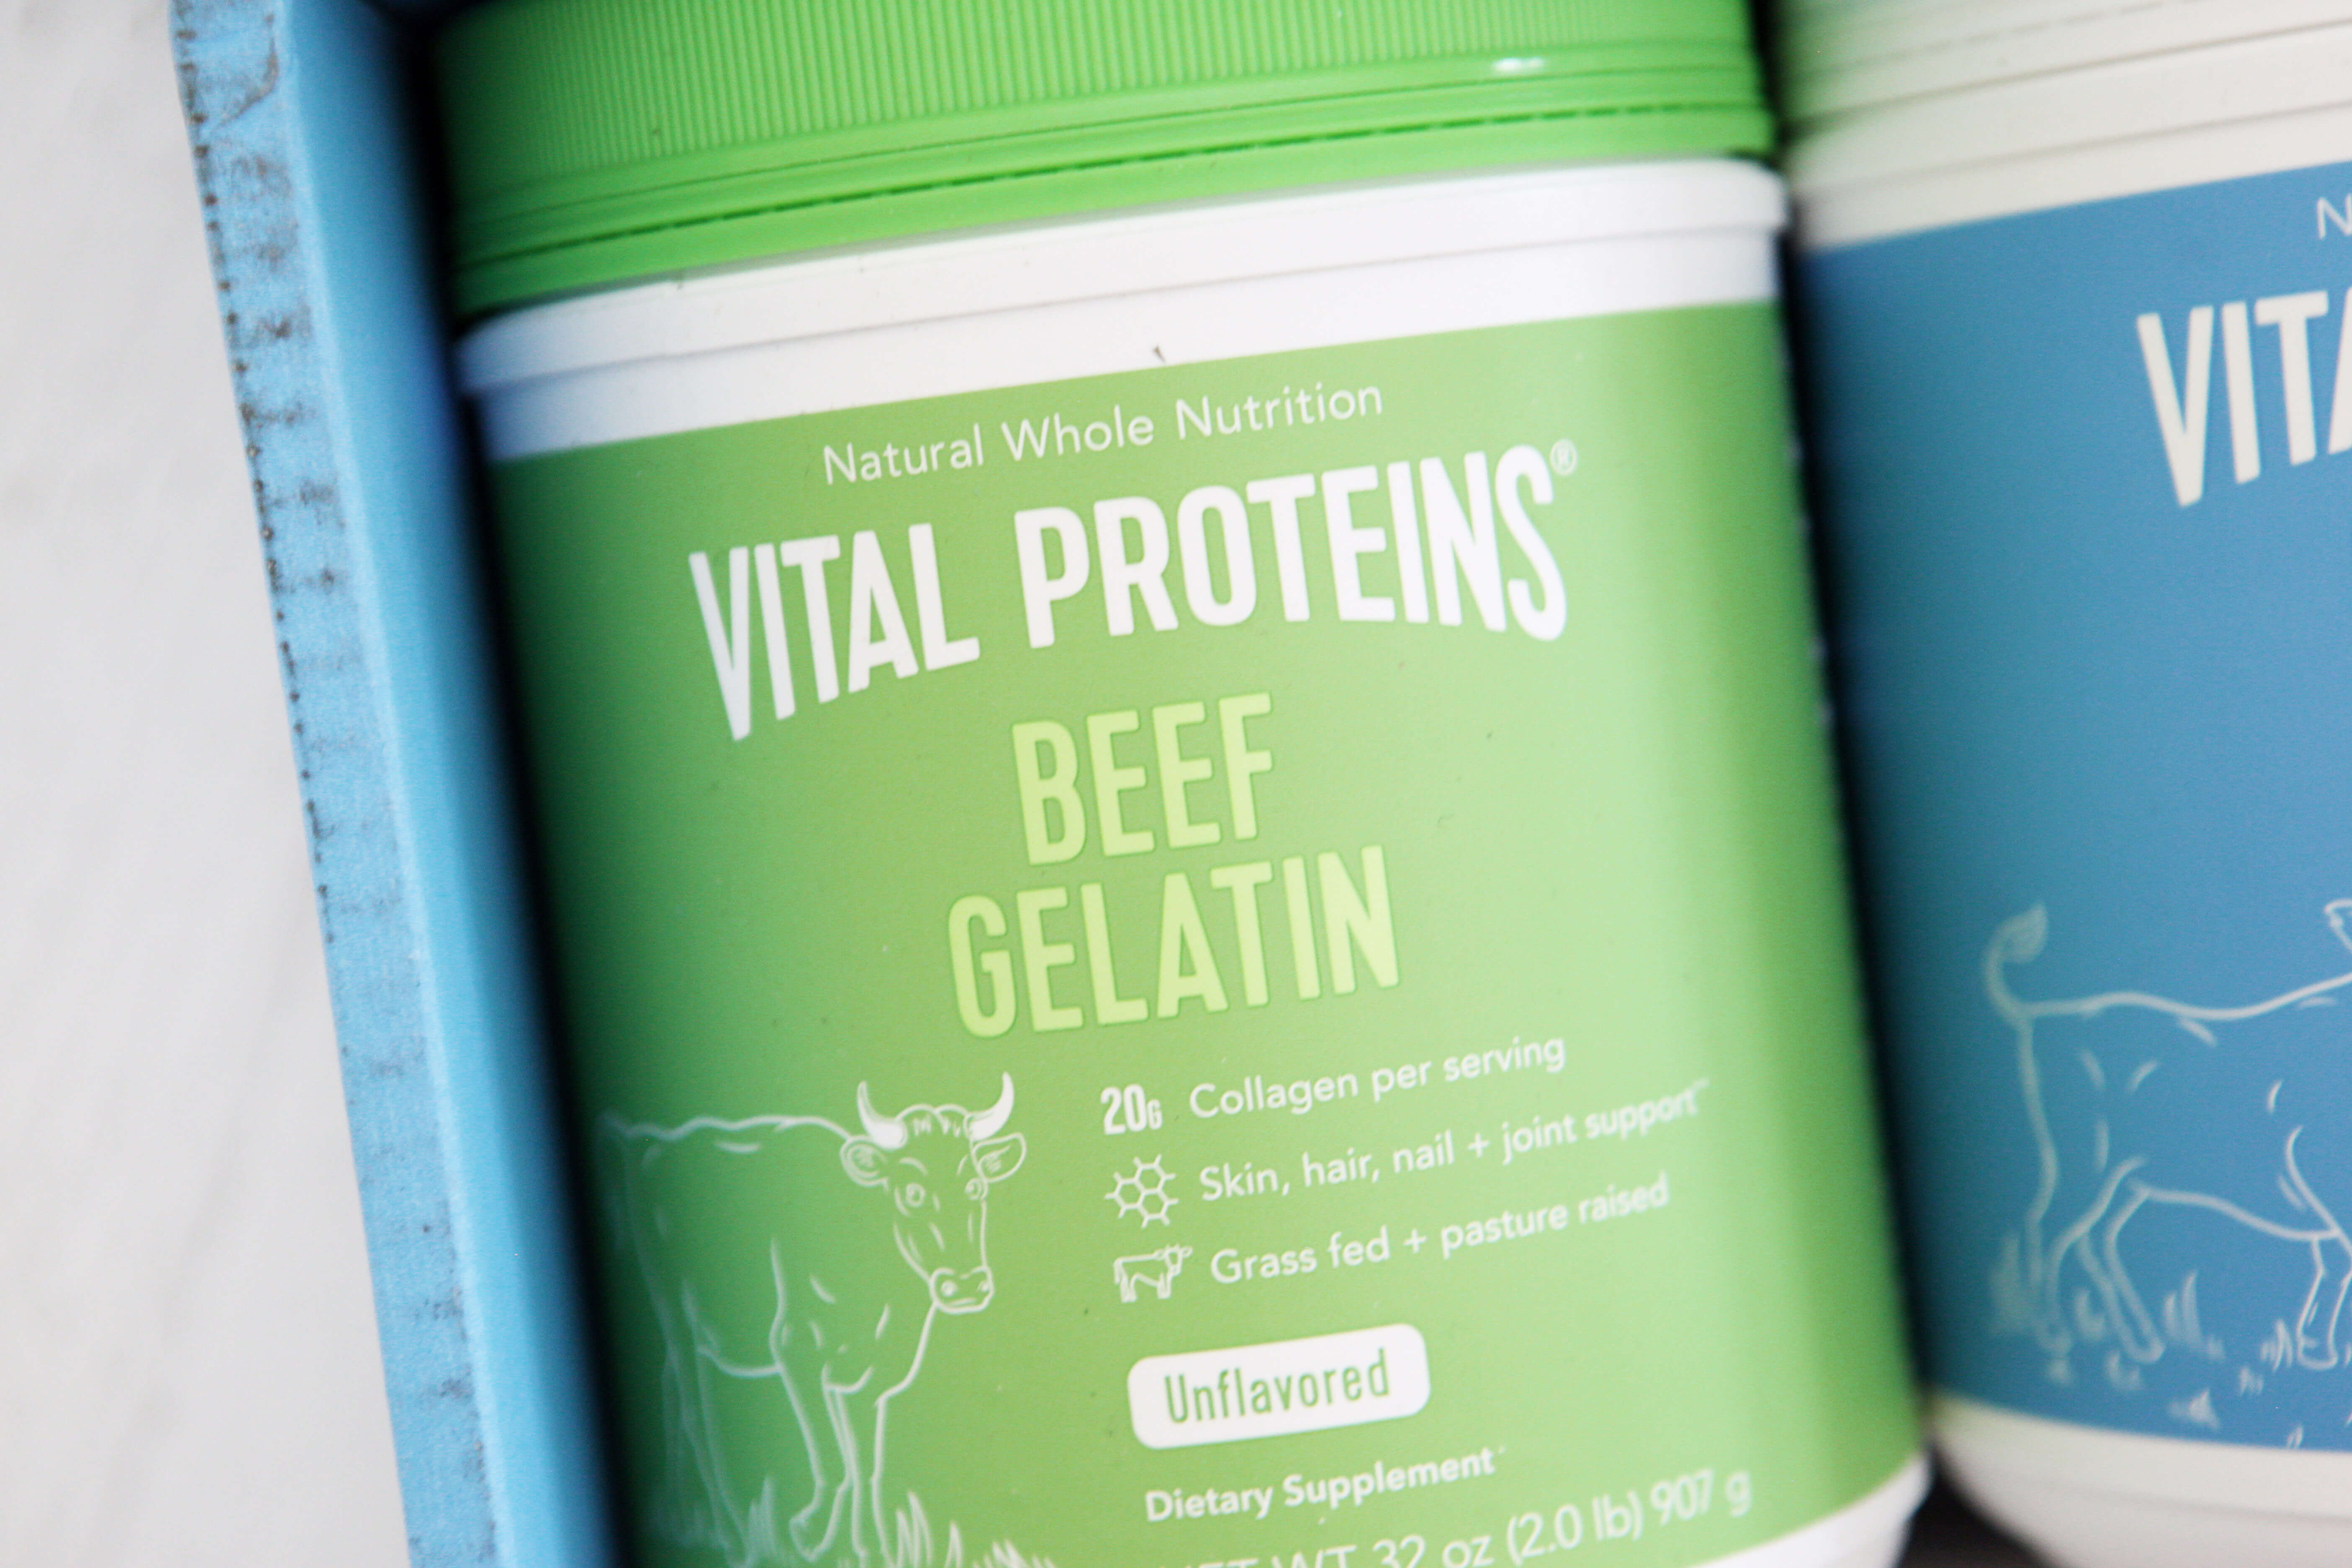 28 Simple Ways to Incorporate Collagen and Gelatin Into Your Diet www.sarahkayhoffman.com Vital Proteins Beef Gelatin #gelatin #collagen #guthealth #guthealing #supplements